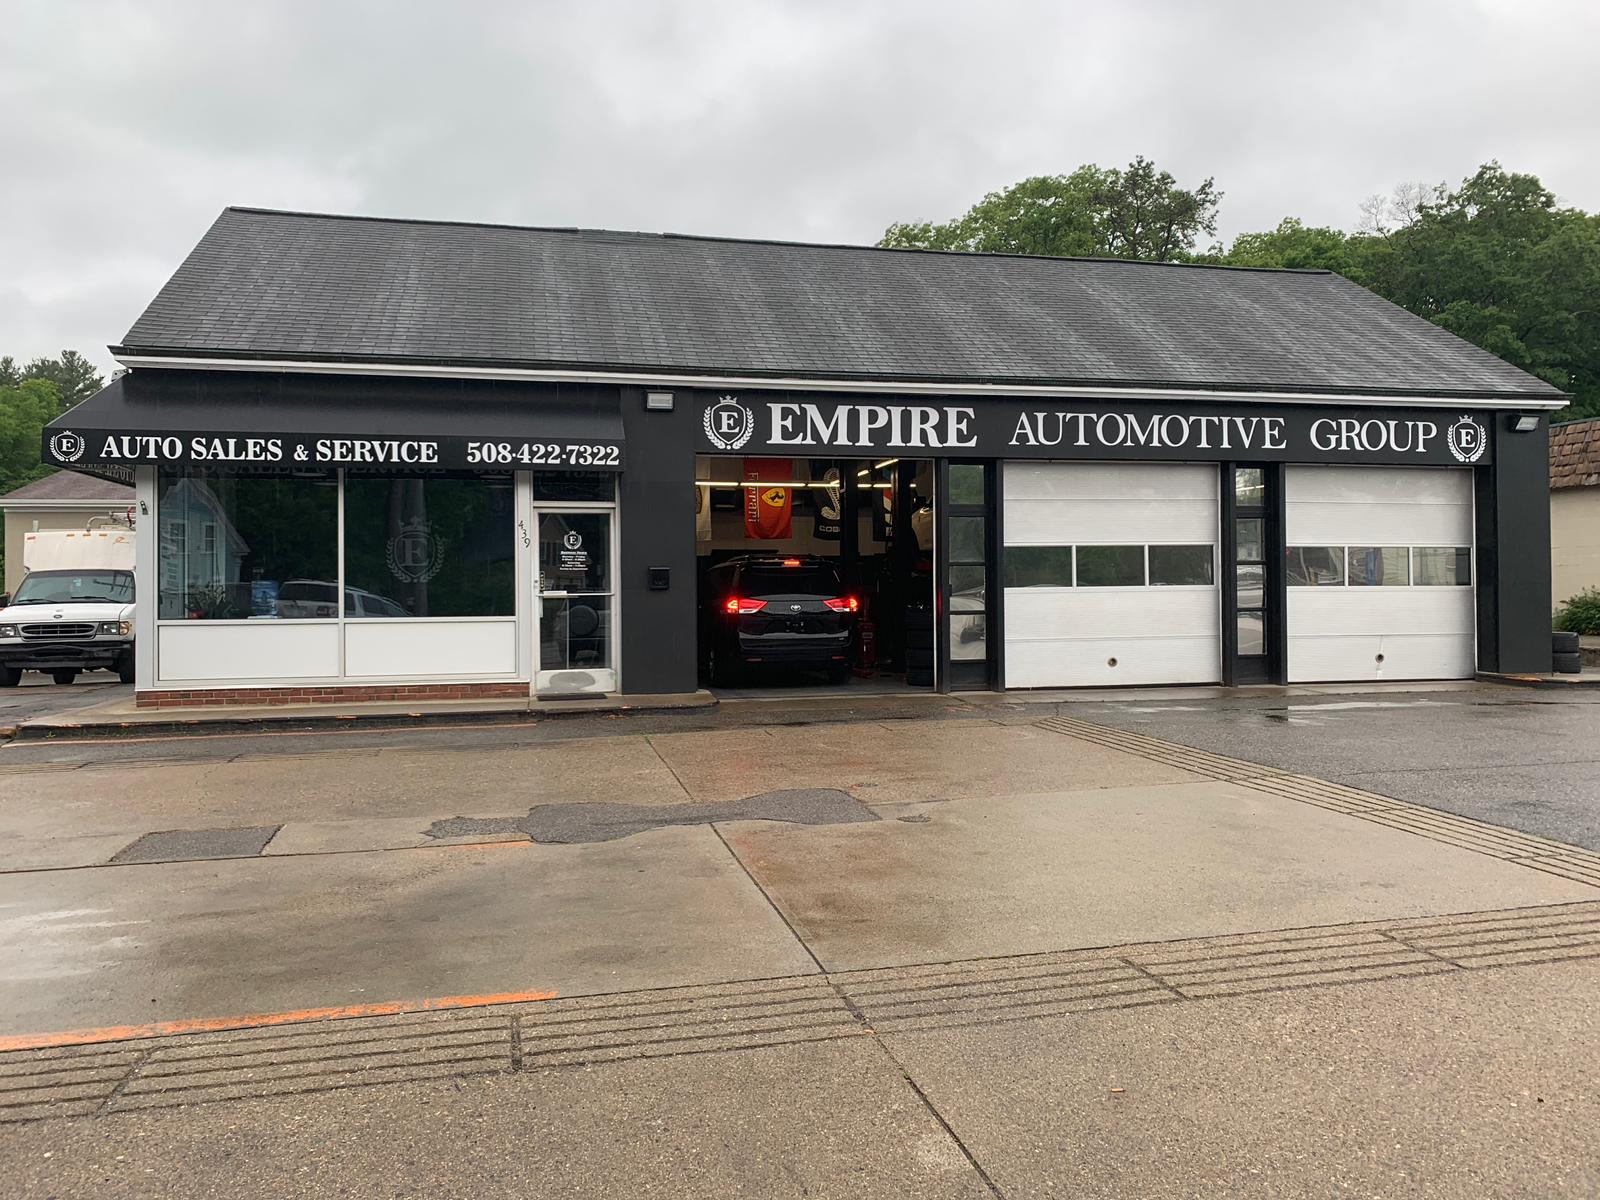 Empire Automotive Group